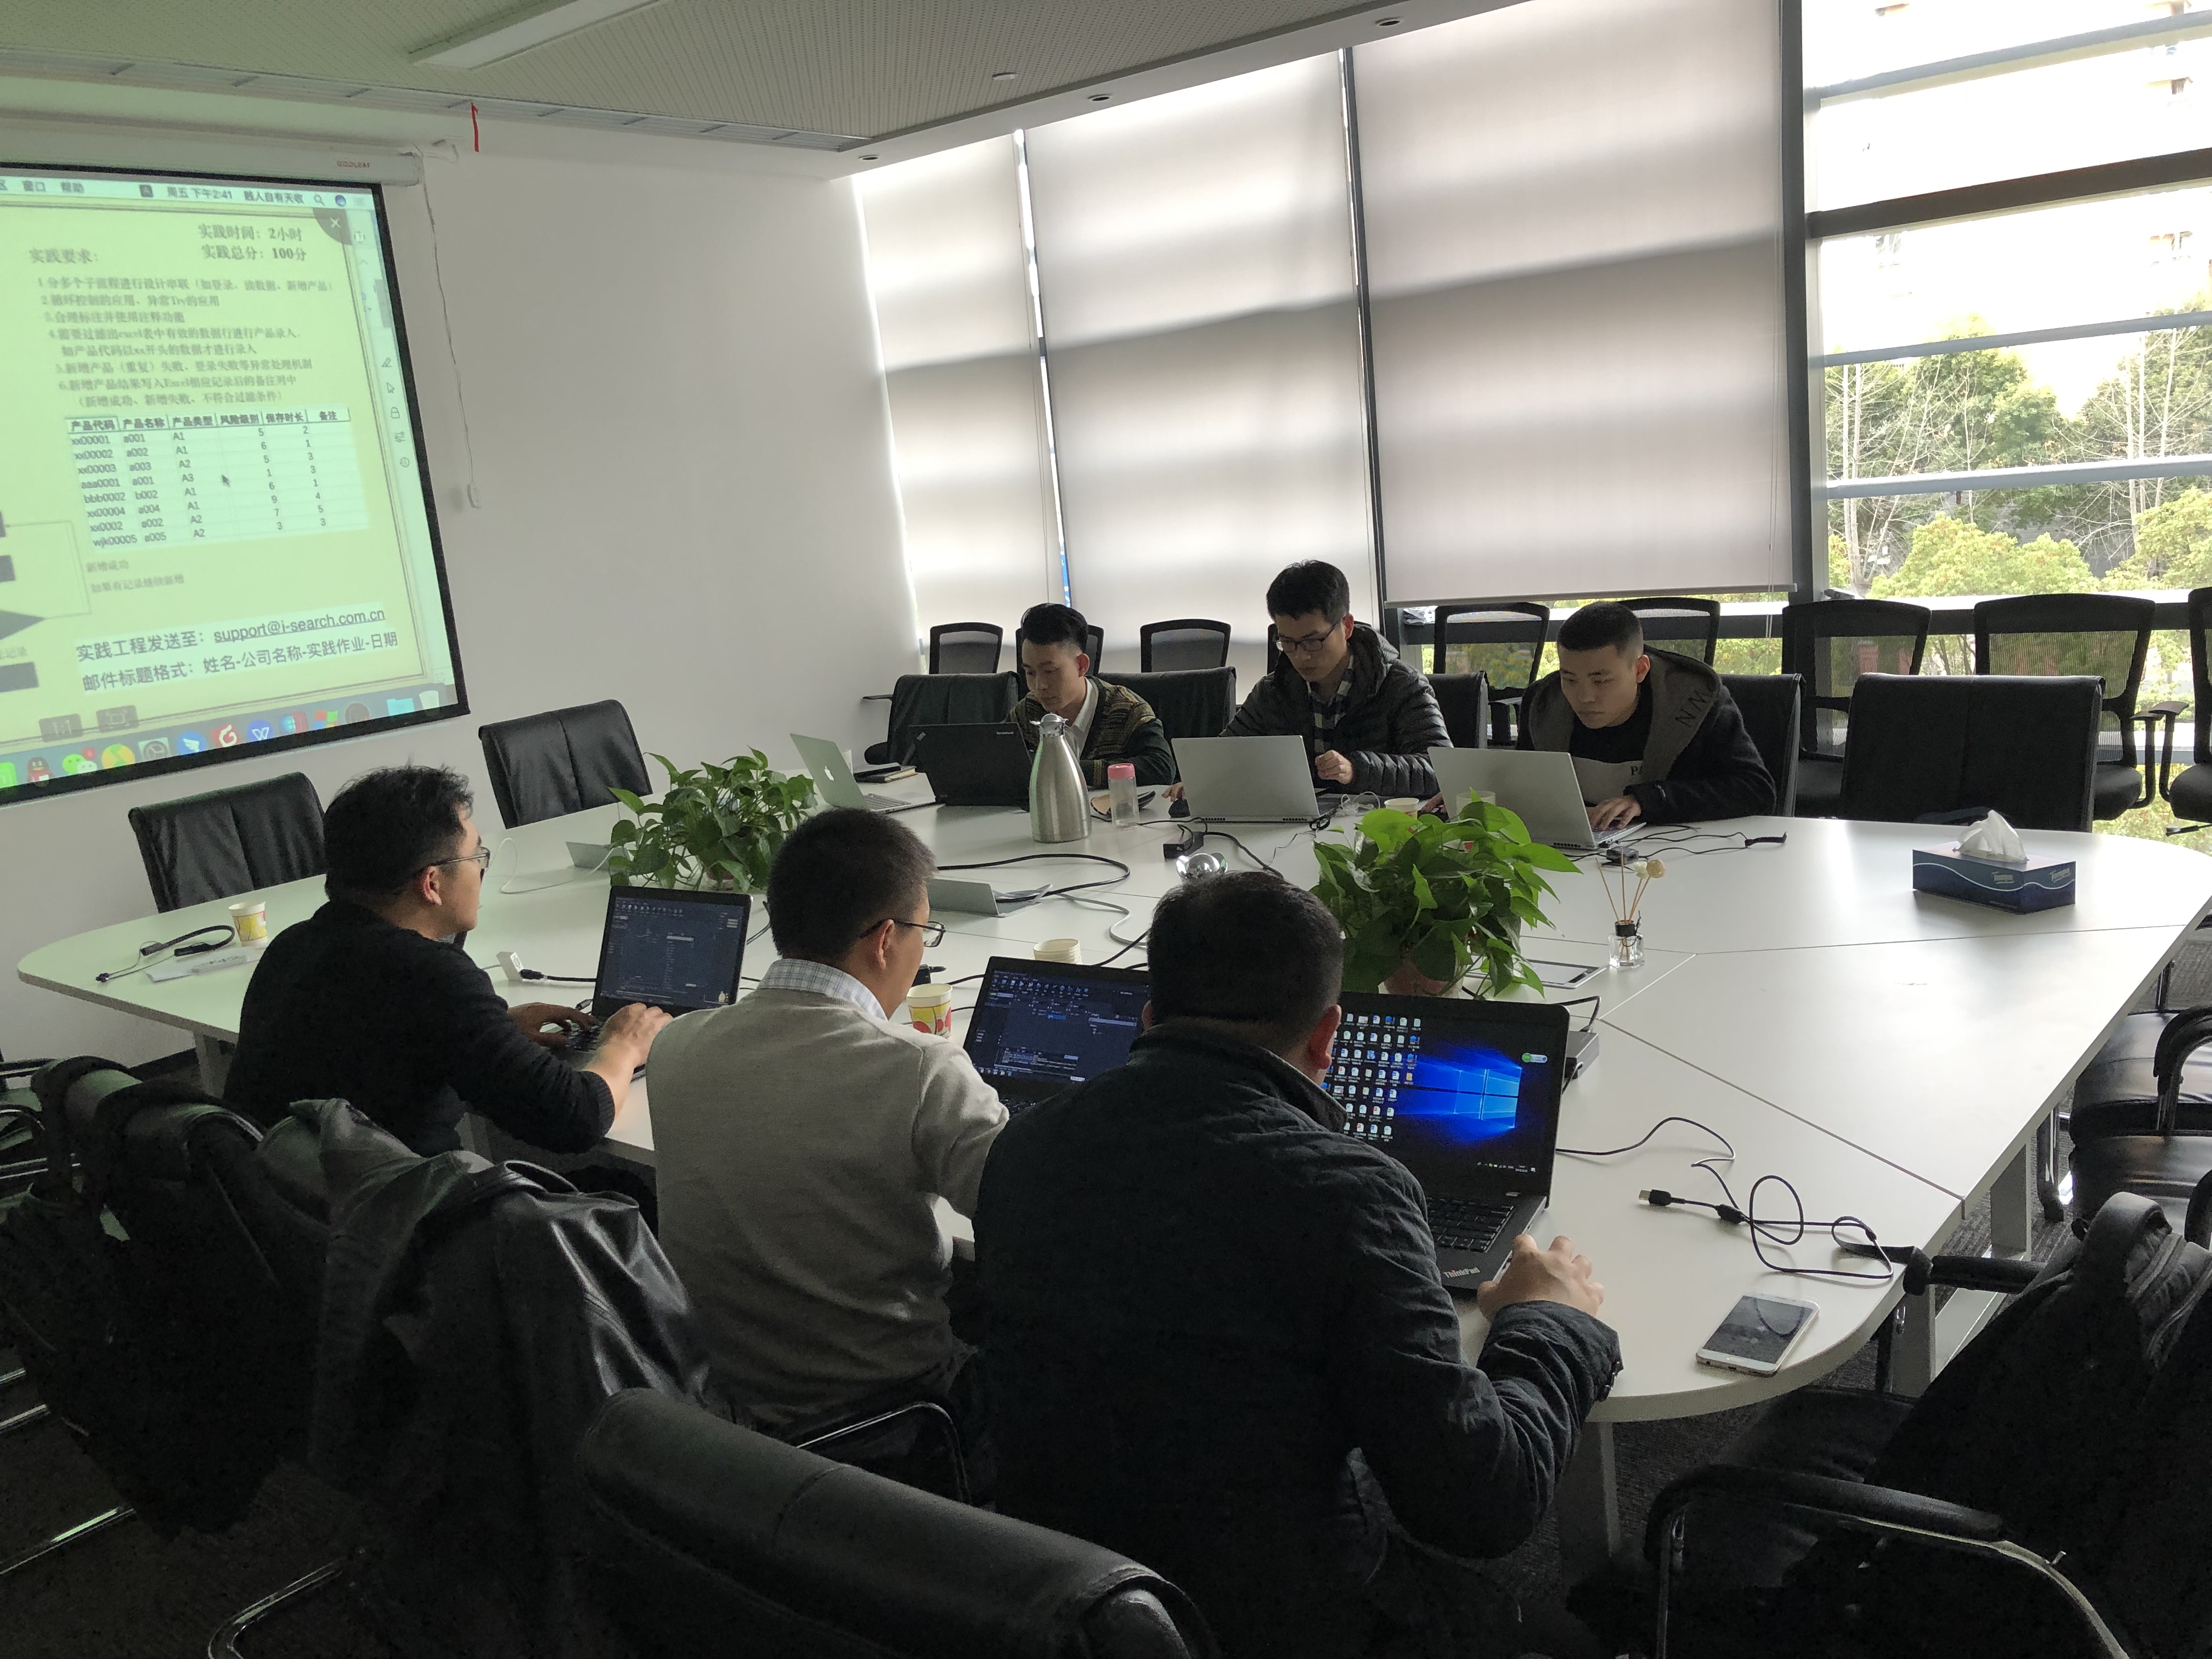 iS-RPA 技术认证培训 - 上海 20190322 班 - 培训完成